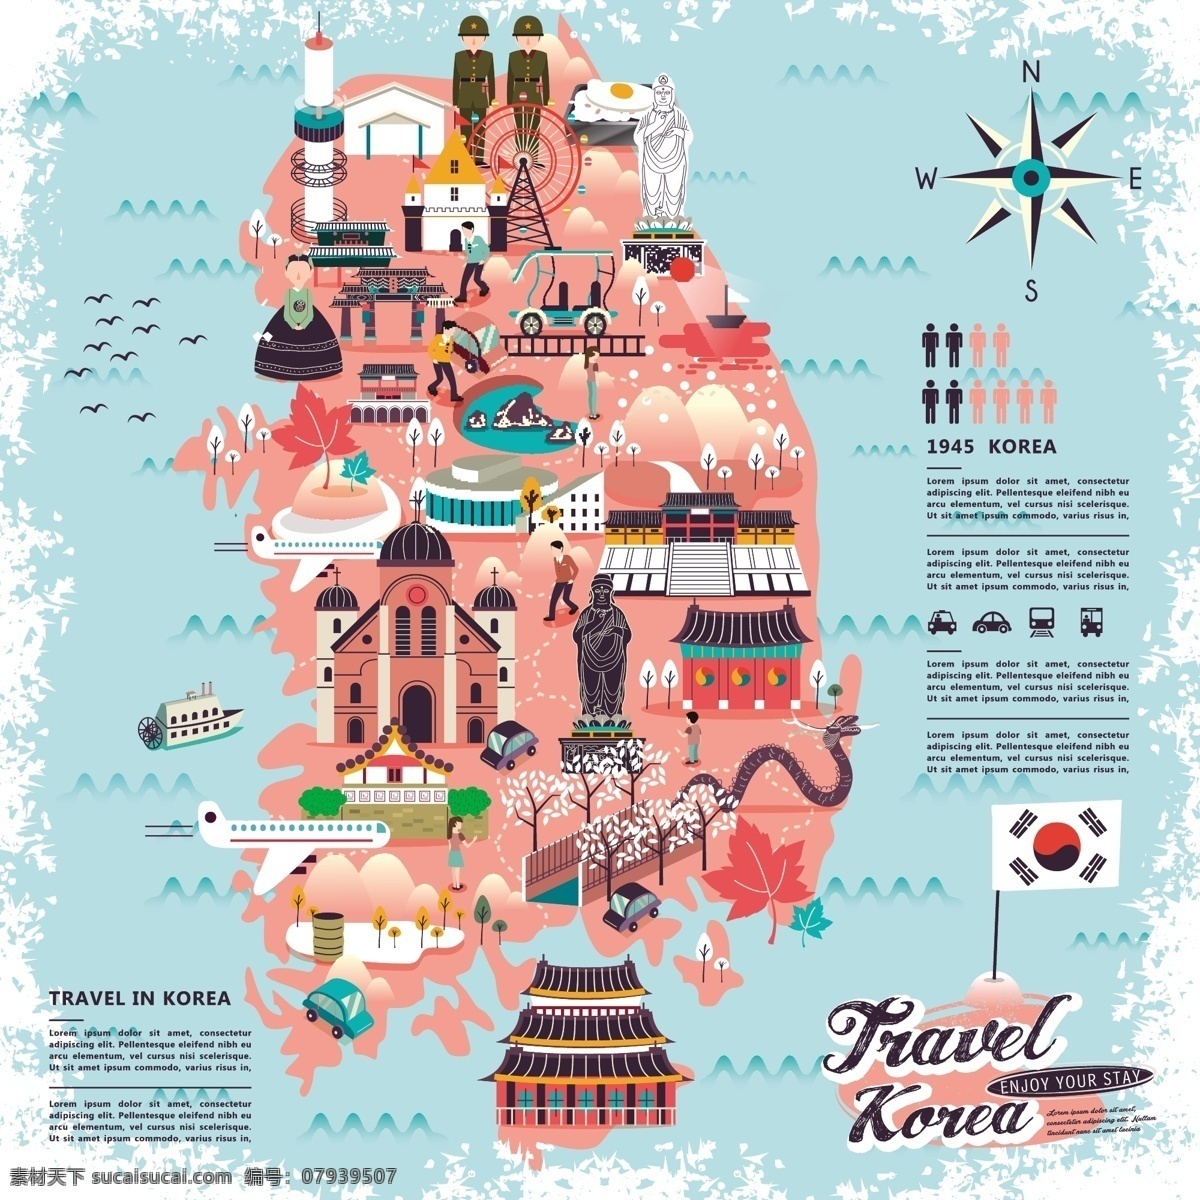 粉色 系 韩国 旅行 地标 美食 手绘 地图 矢量 卡通 矢量素材 背景素材 设计素材